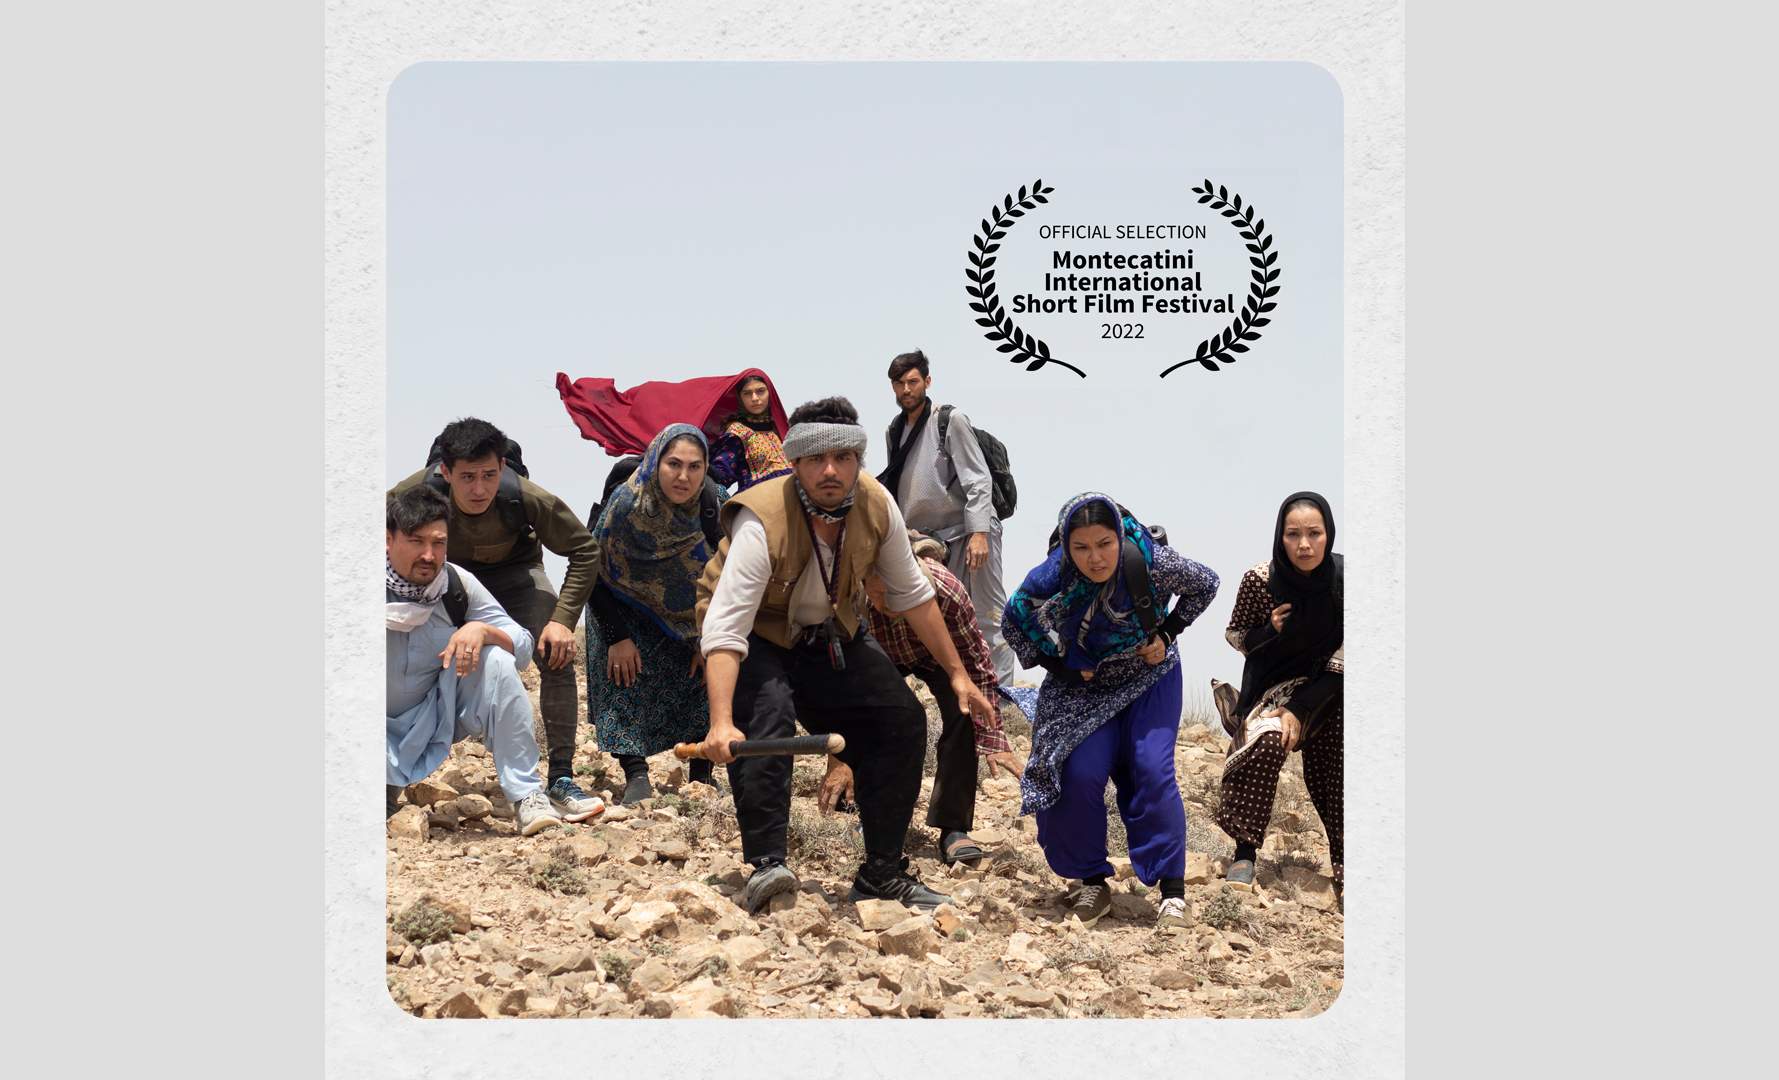 فیلم کوتاه «رویا» منتخب جشنواره مونتکاتینی شد